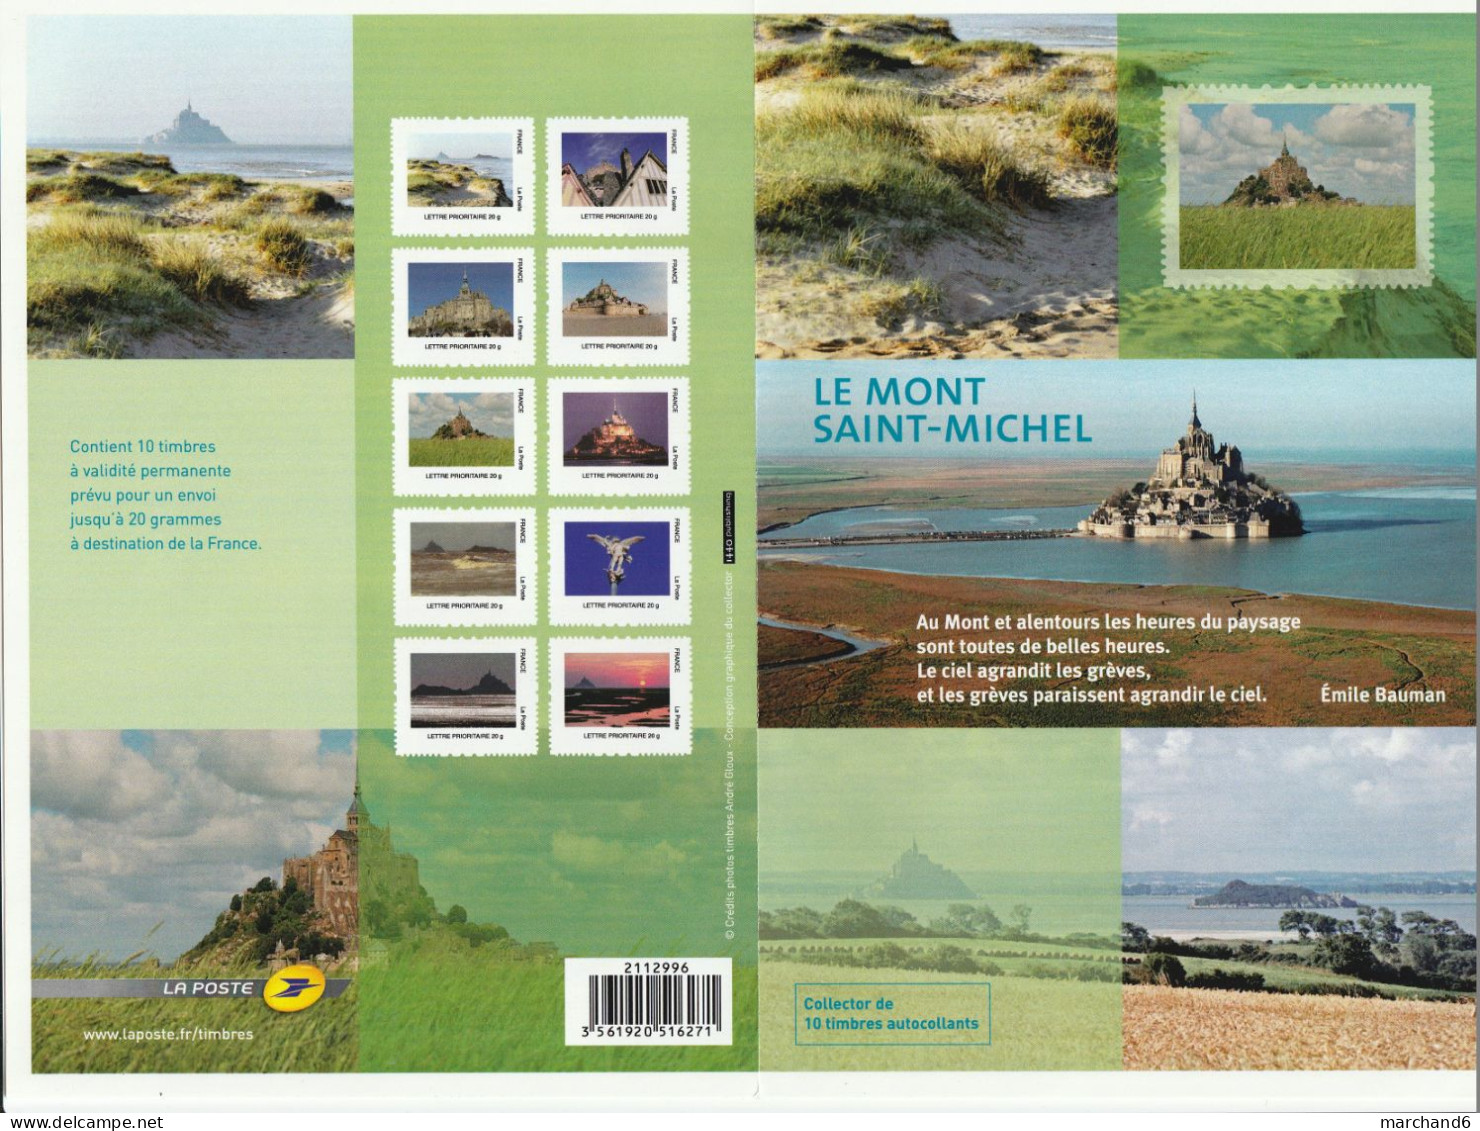 Feuillet Collector Le Mont Saint Michel France 2012 IDT L P 20gr 10 Timbres Autoadhésifs N°133 - Collectors